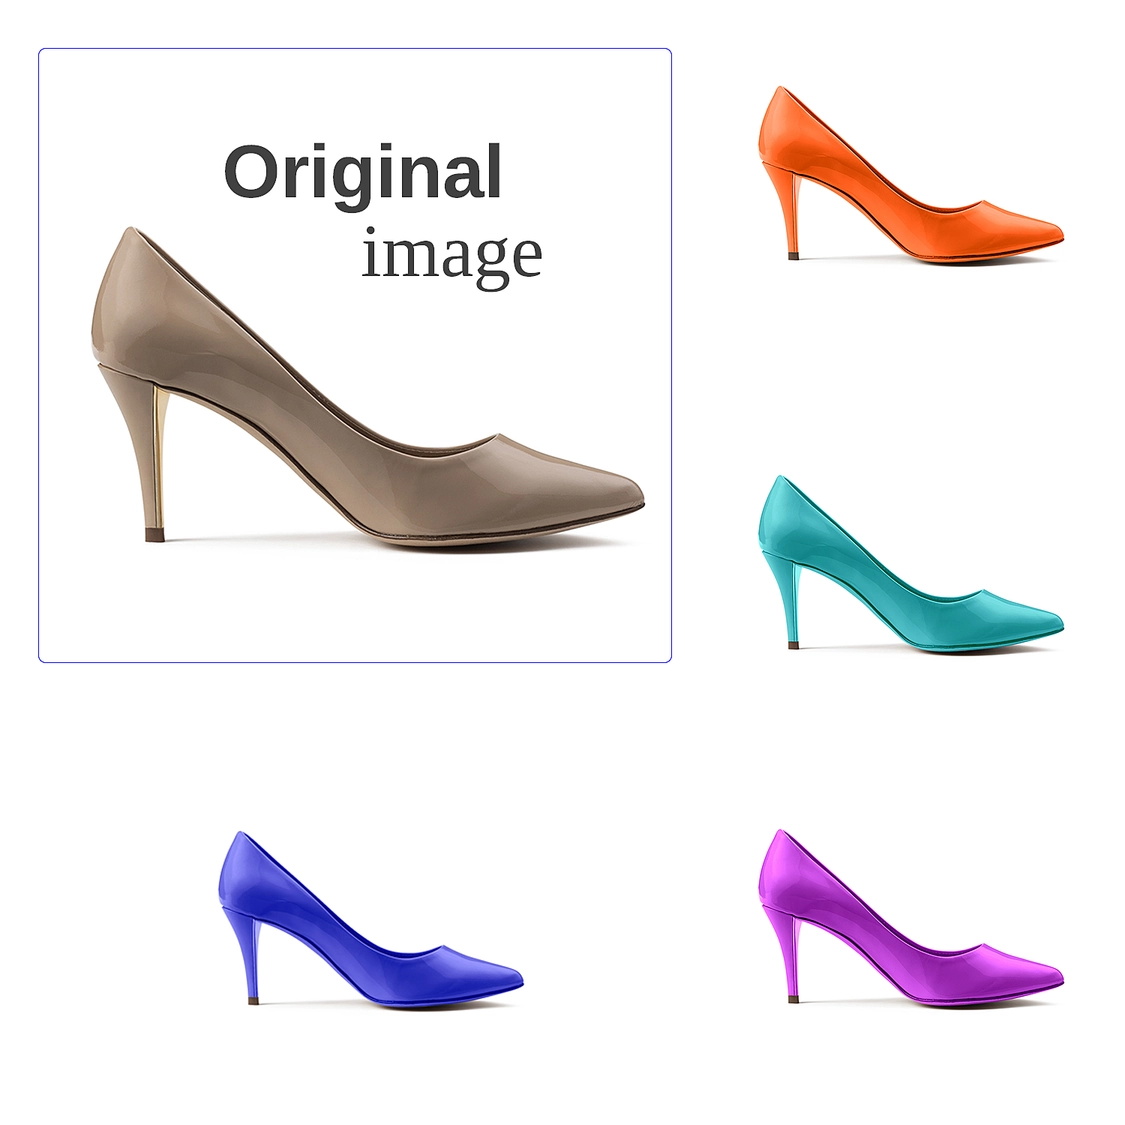 Produktfoto neu einfärben - Schuh